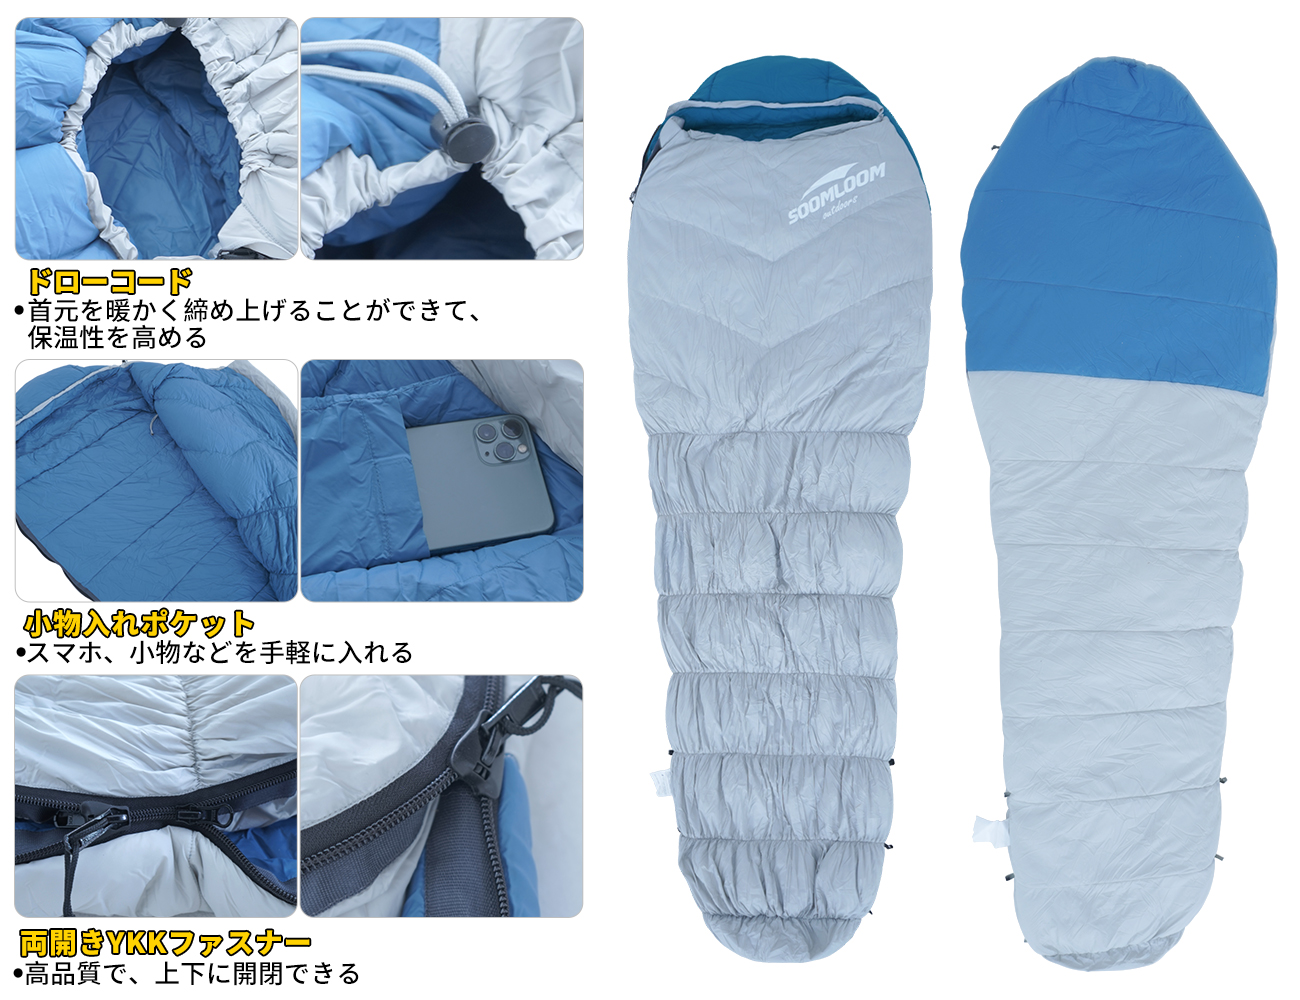 Soomloom 寝袋 マミー型 シュラフ 耐寒温度-9.4℃